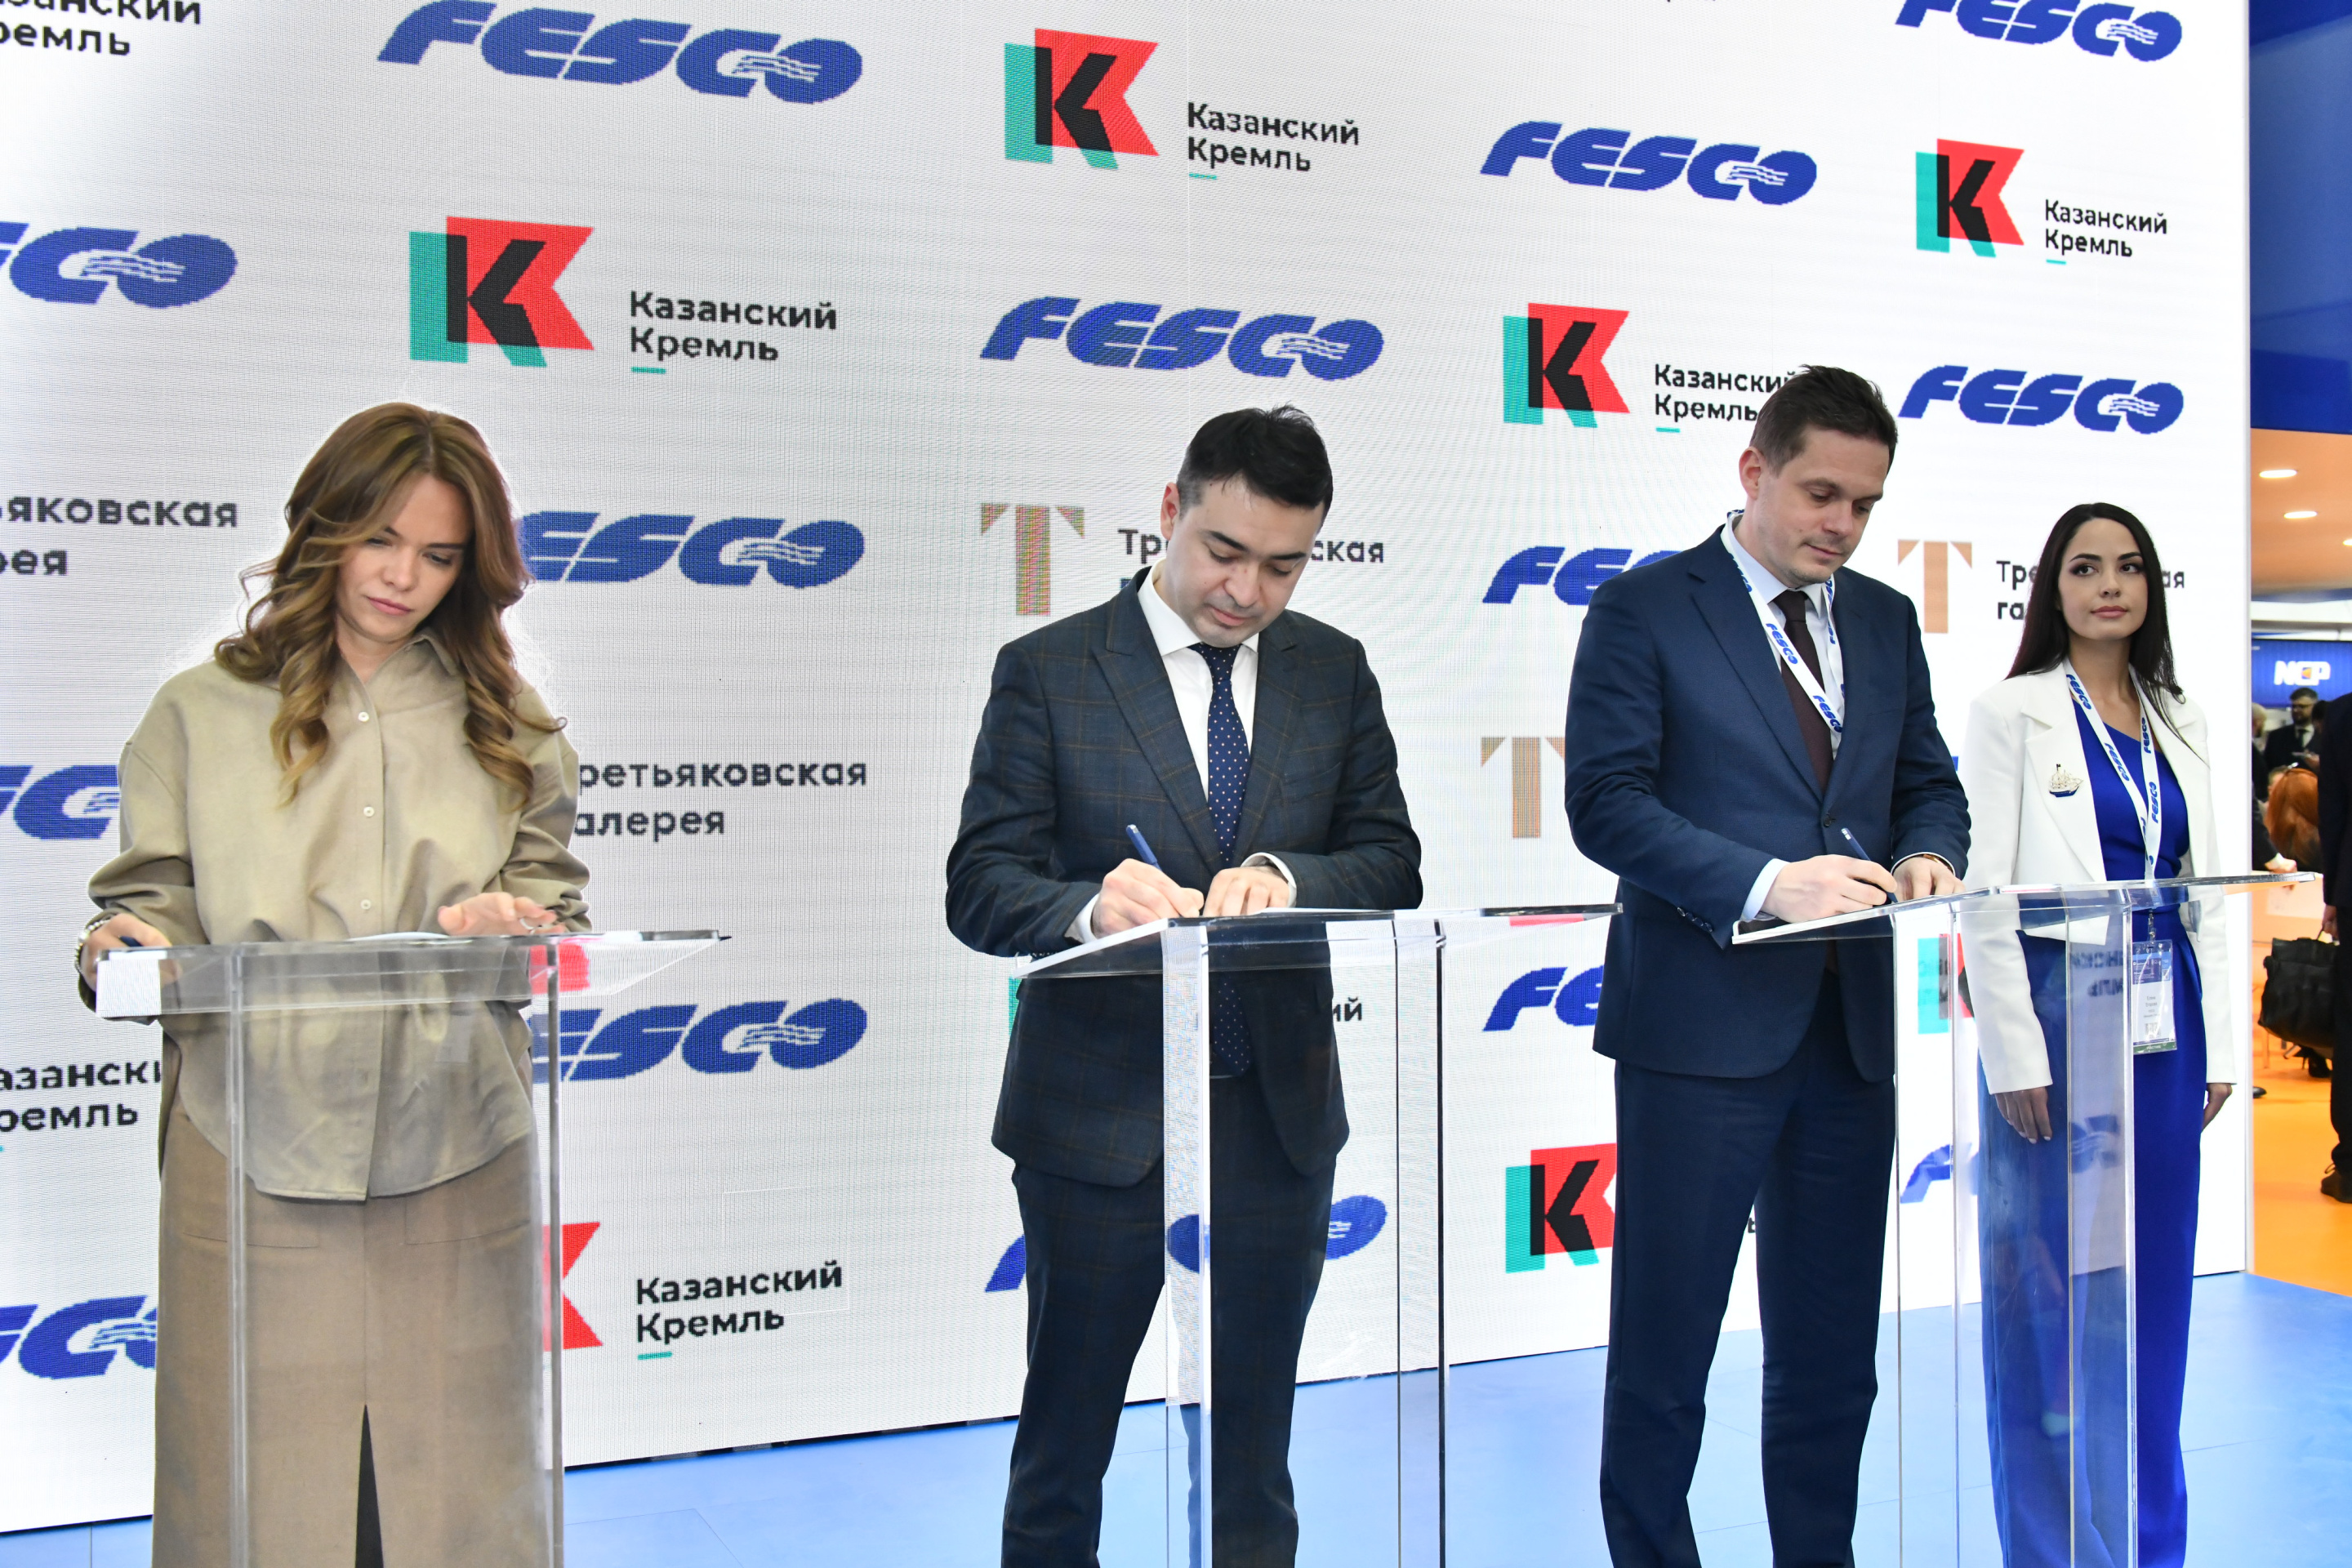 FESCO, Третьяковская галерея и Казанский Кремль представят новый совместный проект